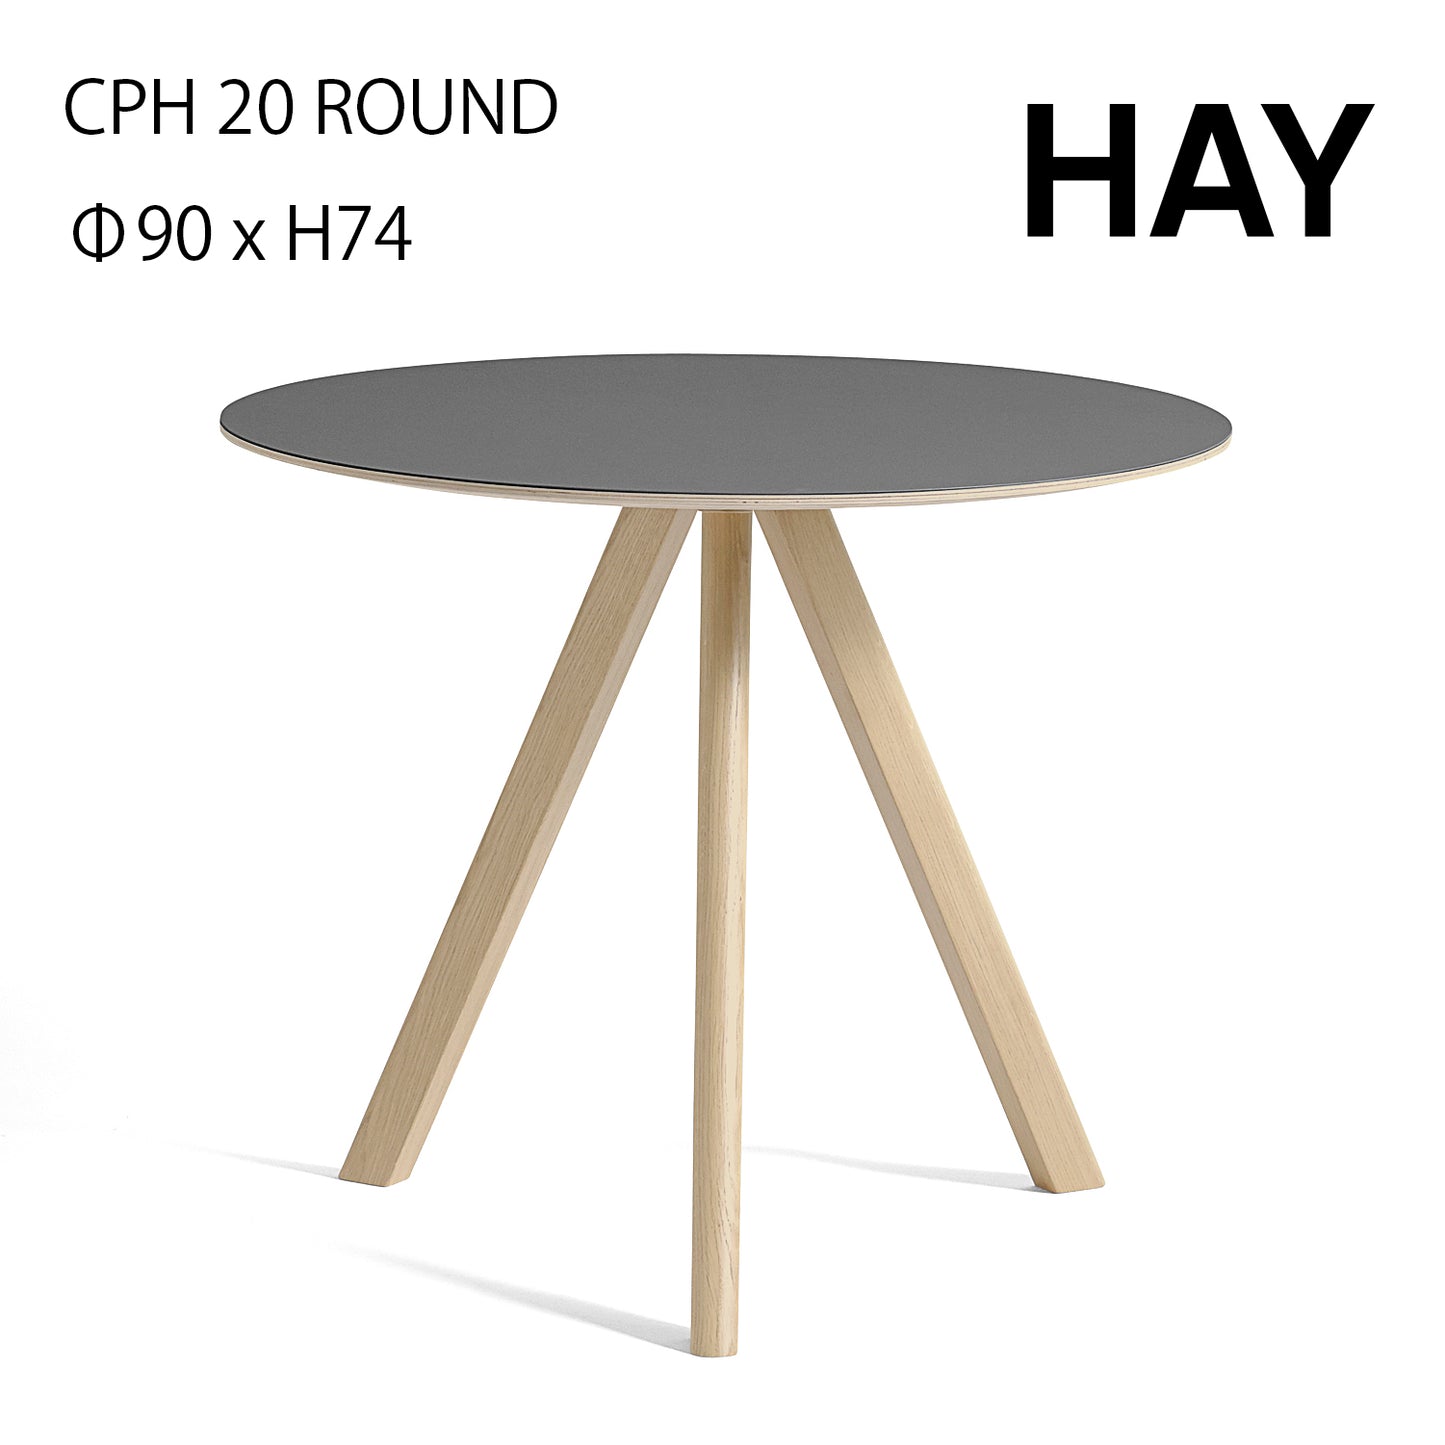 HAY ヘイ COPENHAGUE CPH 20 ROUND Φ90 x H74 コペンハーグ ラウンドテーブル グレー ウォーターラッカー ダイニングテーブル おしゃれ かわいい 北欧